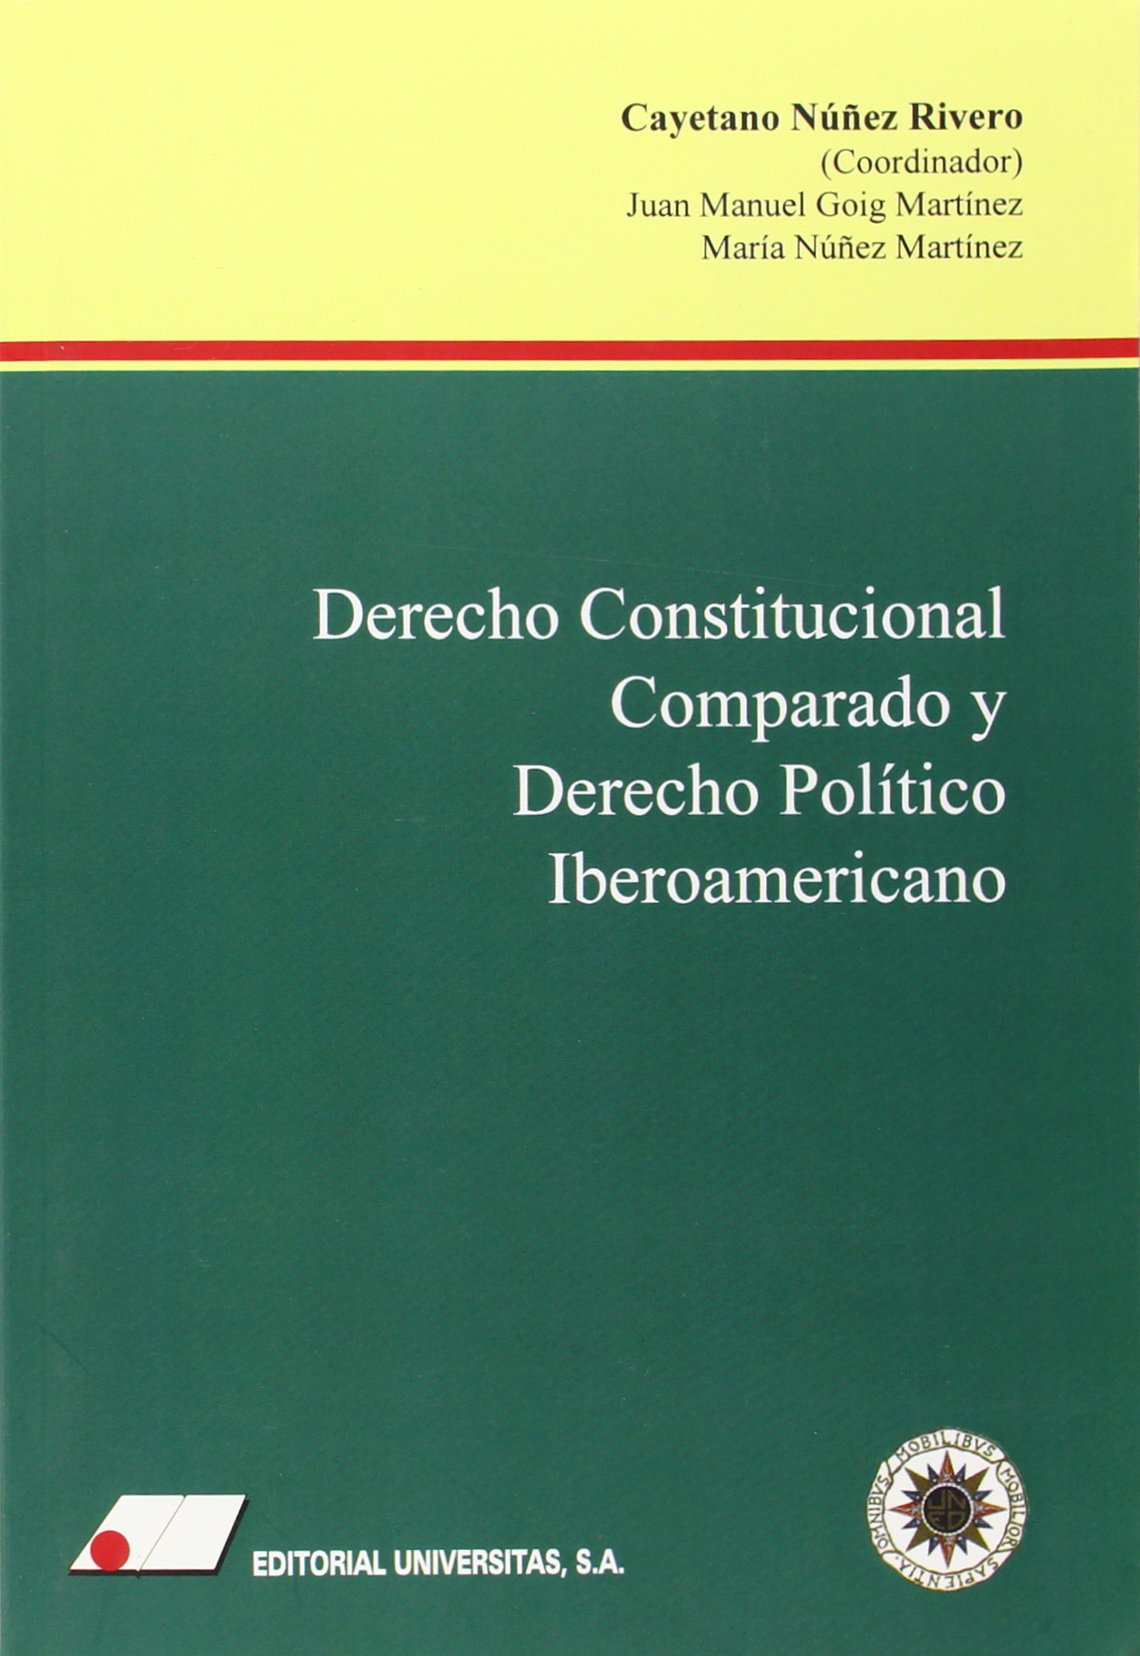 Imagen de portada del libro Derecho Constitucional Comparado y Derecho Político Iberoamericano